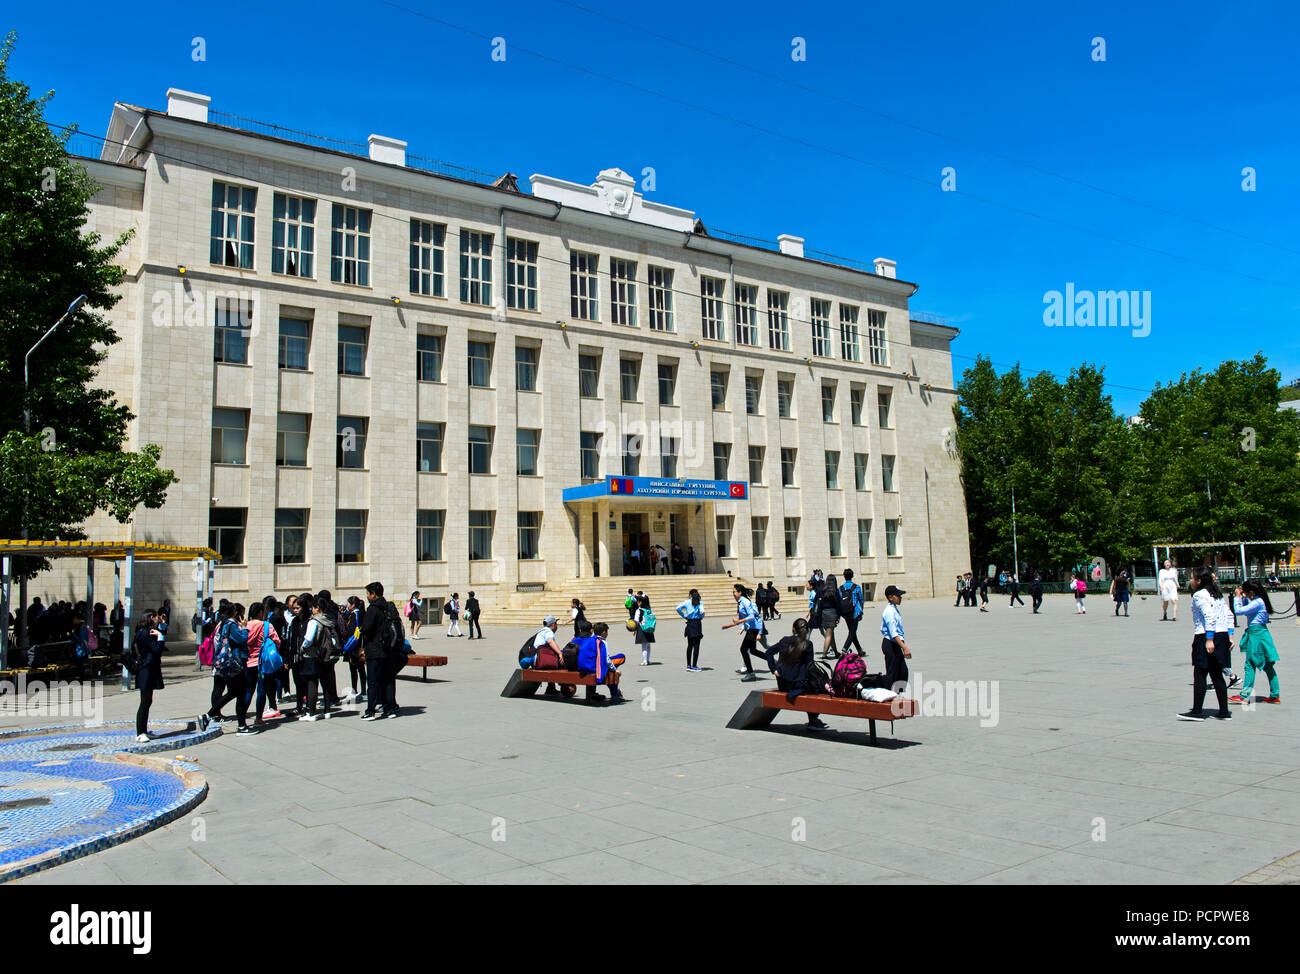 Turkish school in Ulaanbaatar, Mongolia Stock Photo